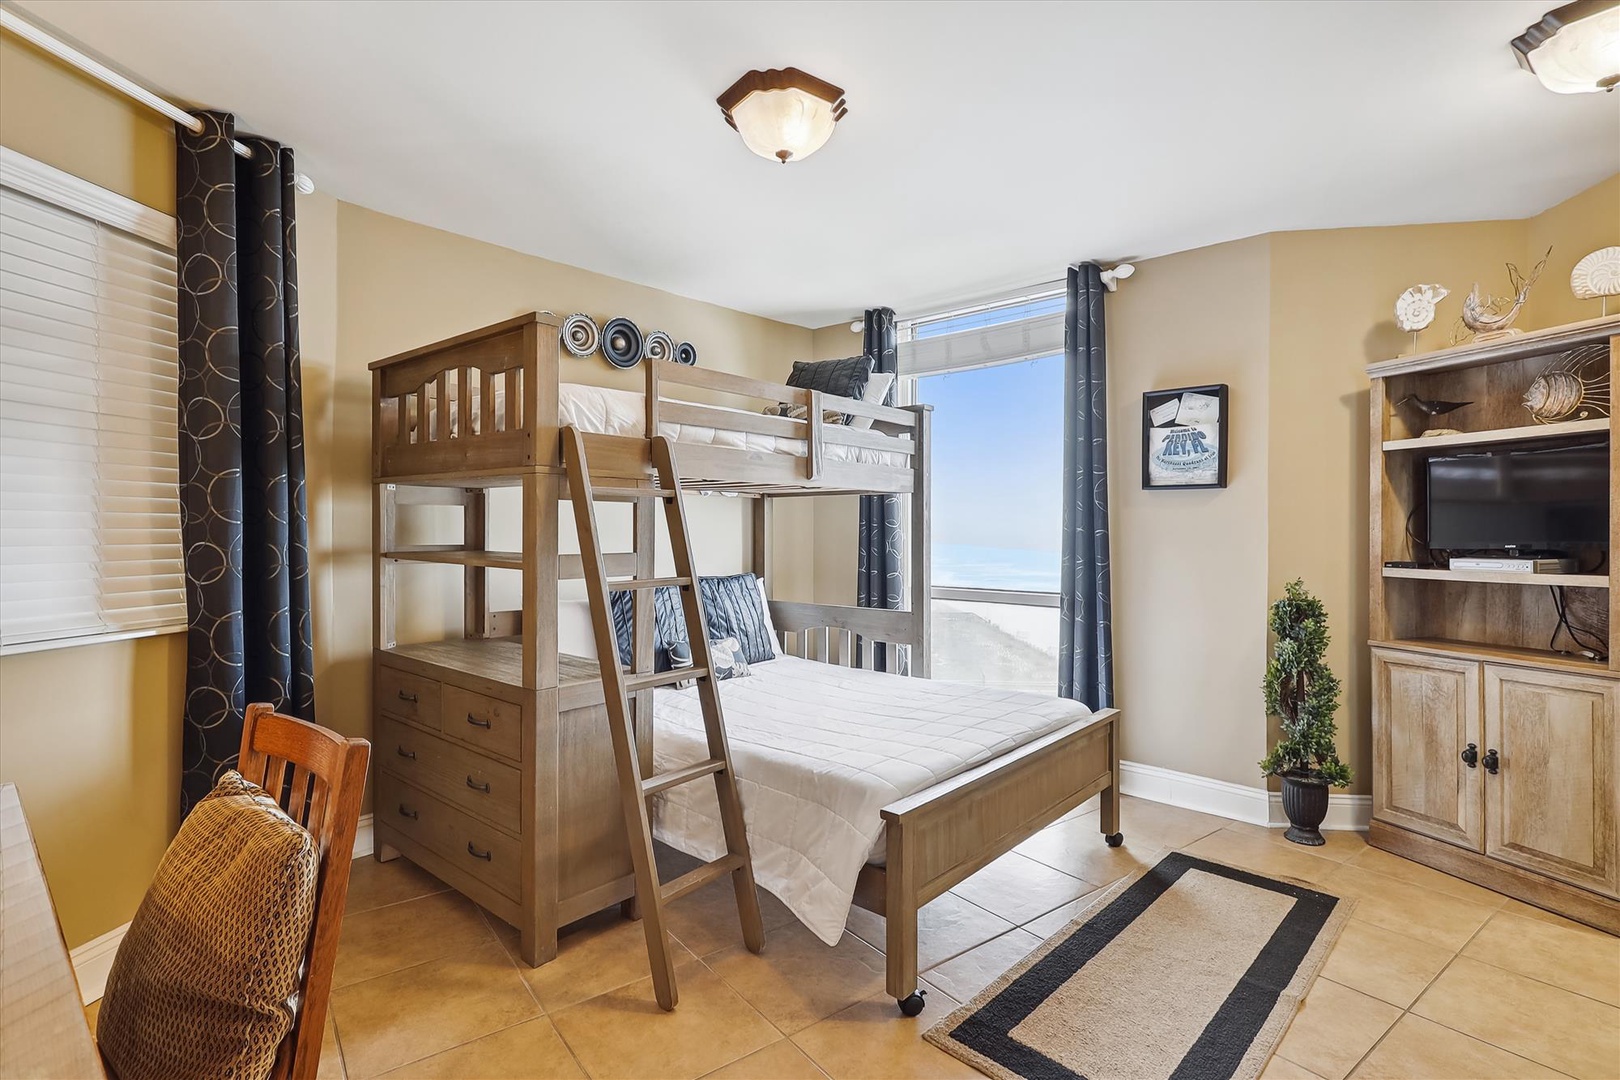 Perdido Sun 900 Guest Bedroom #2 Bunk Beds